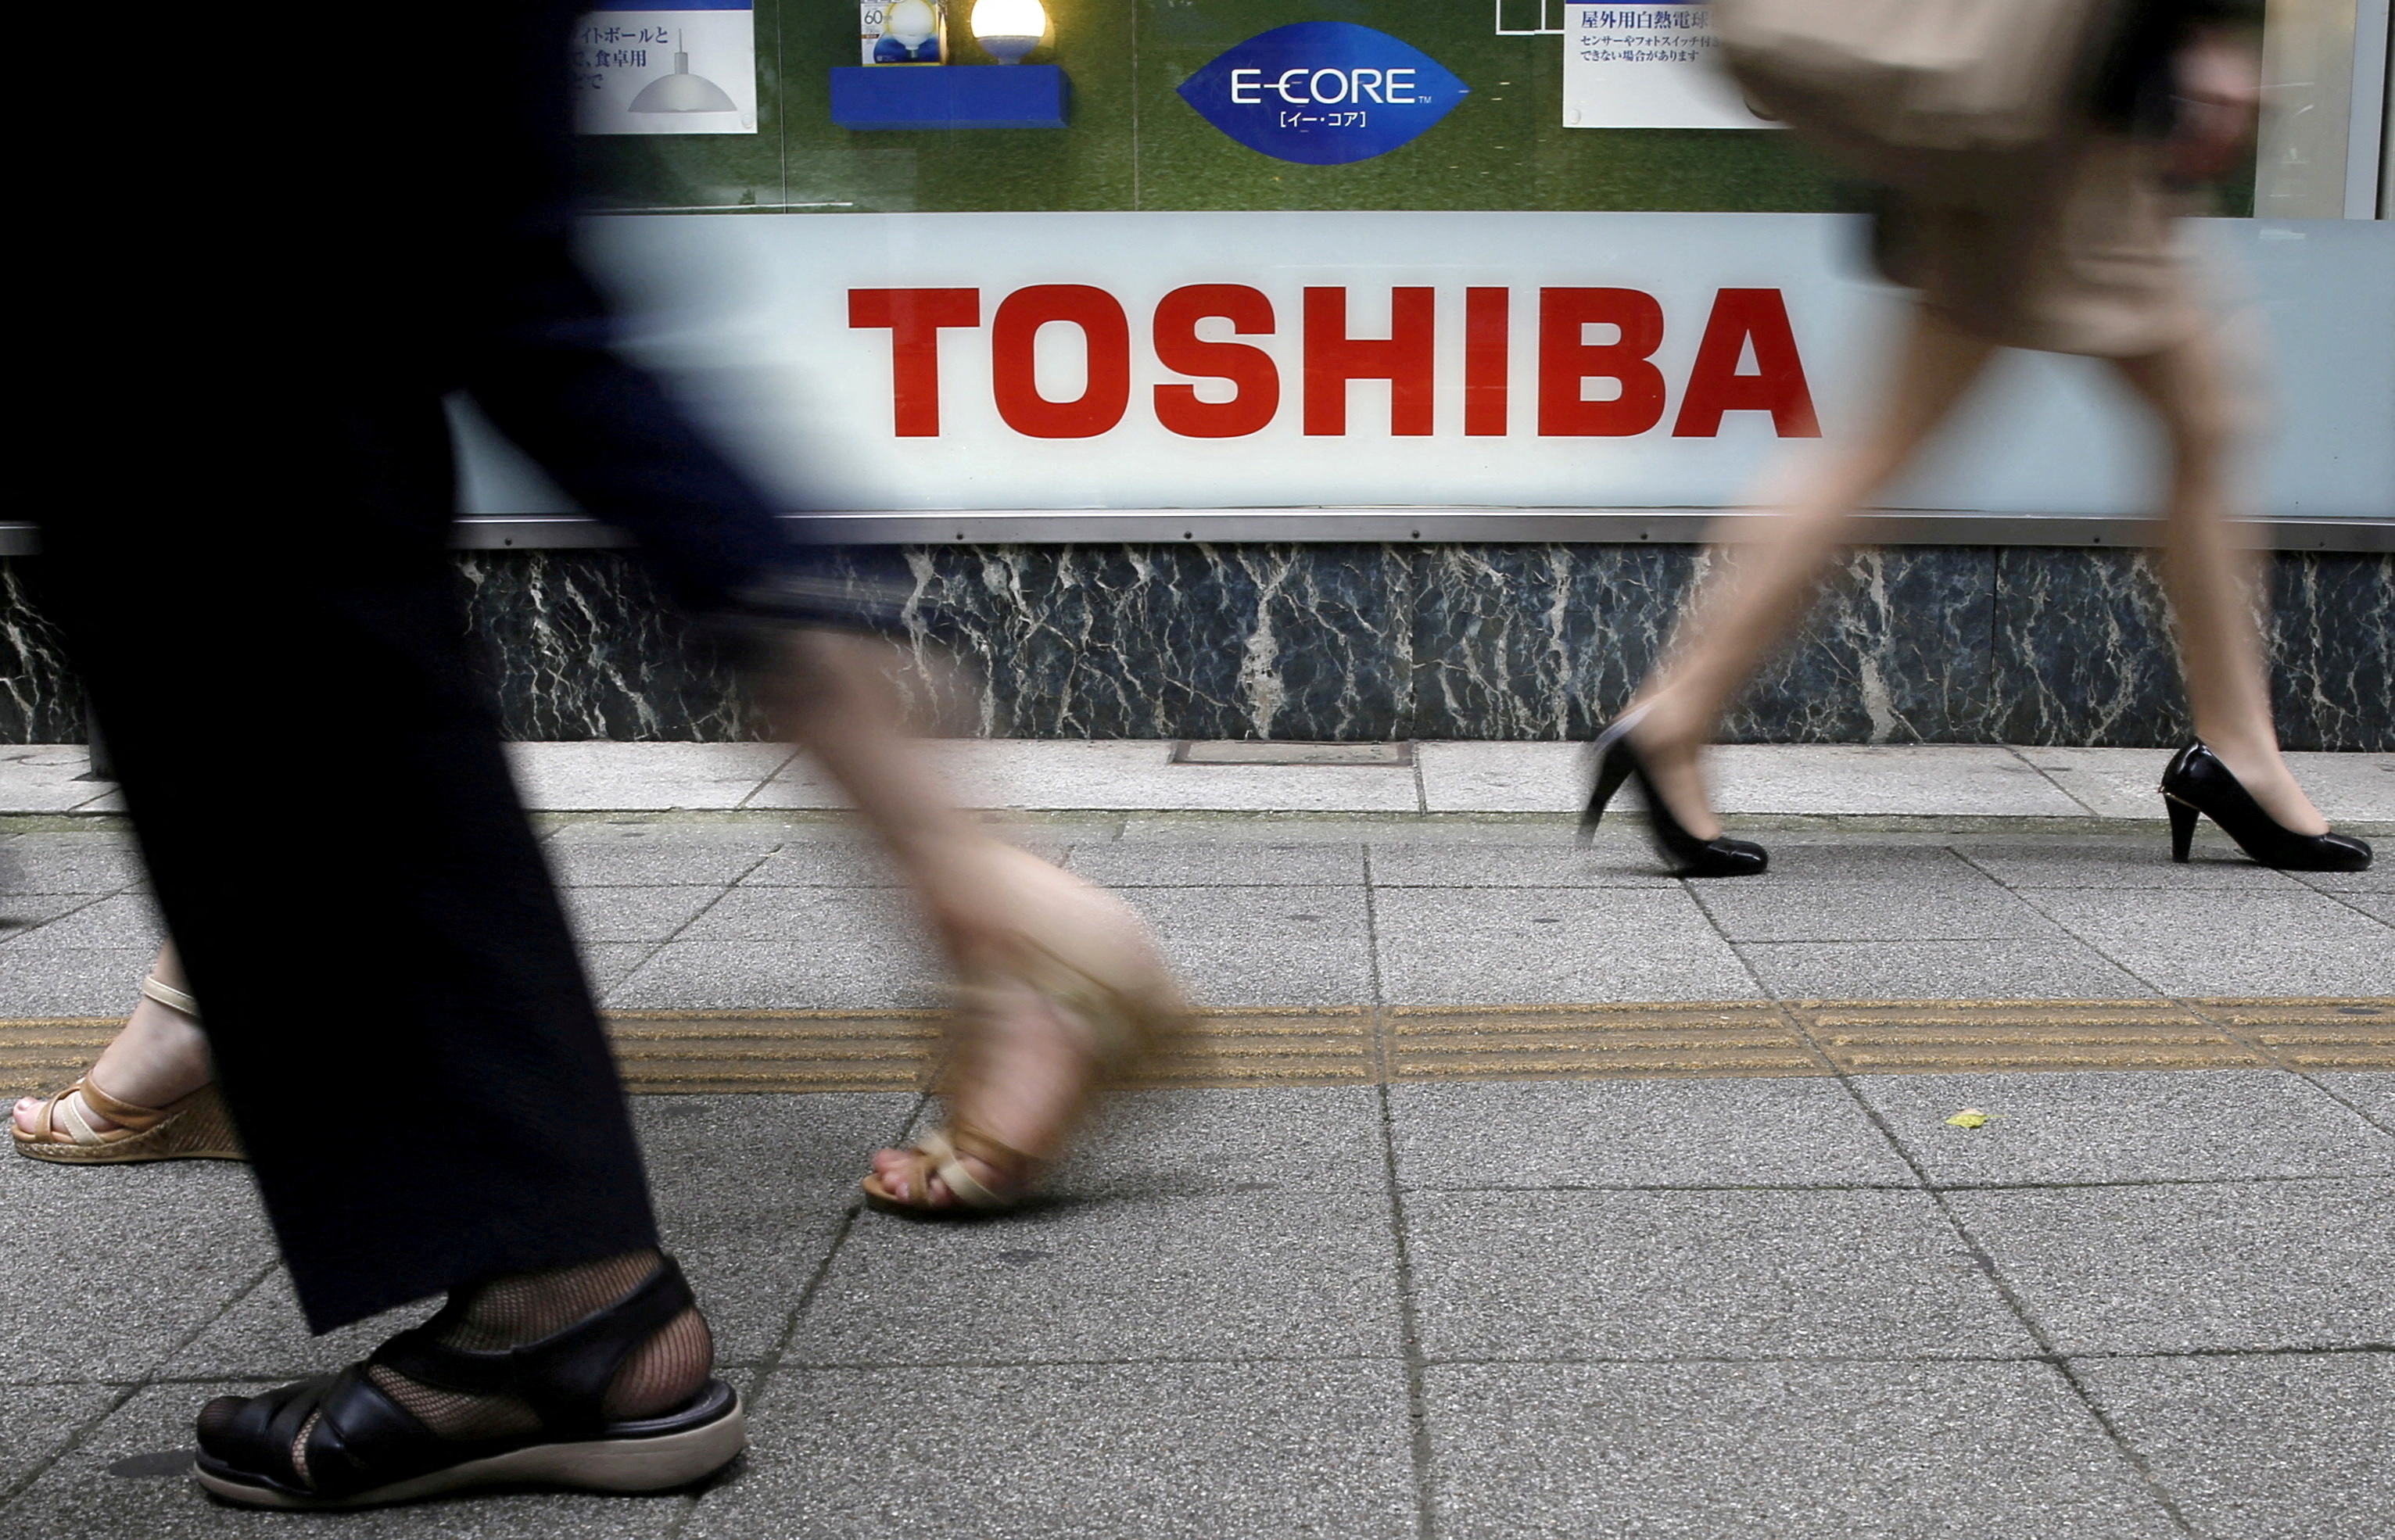 Pedestrians walk past a Toshiba logo outside an electronics retailer in Tokyo